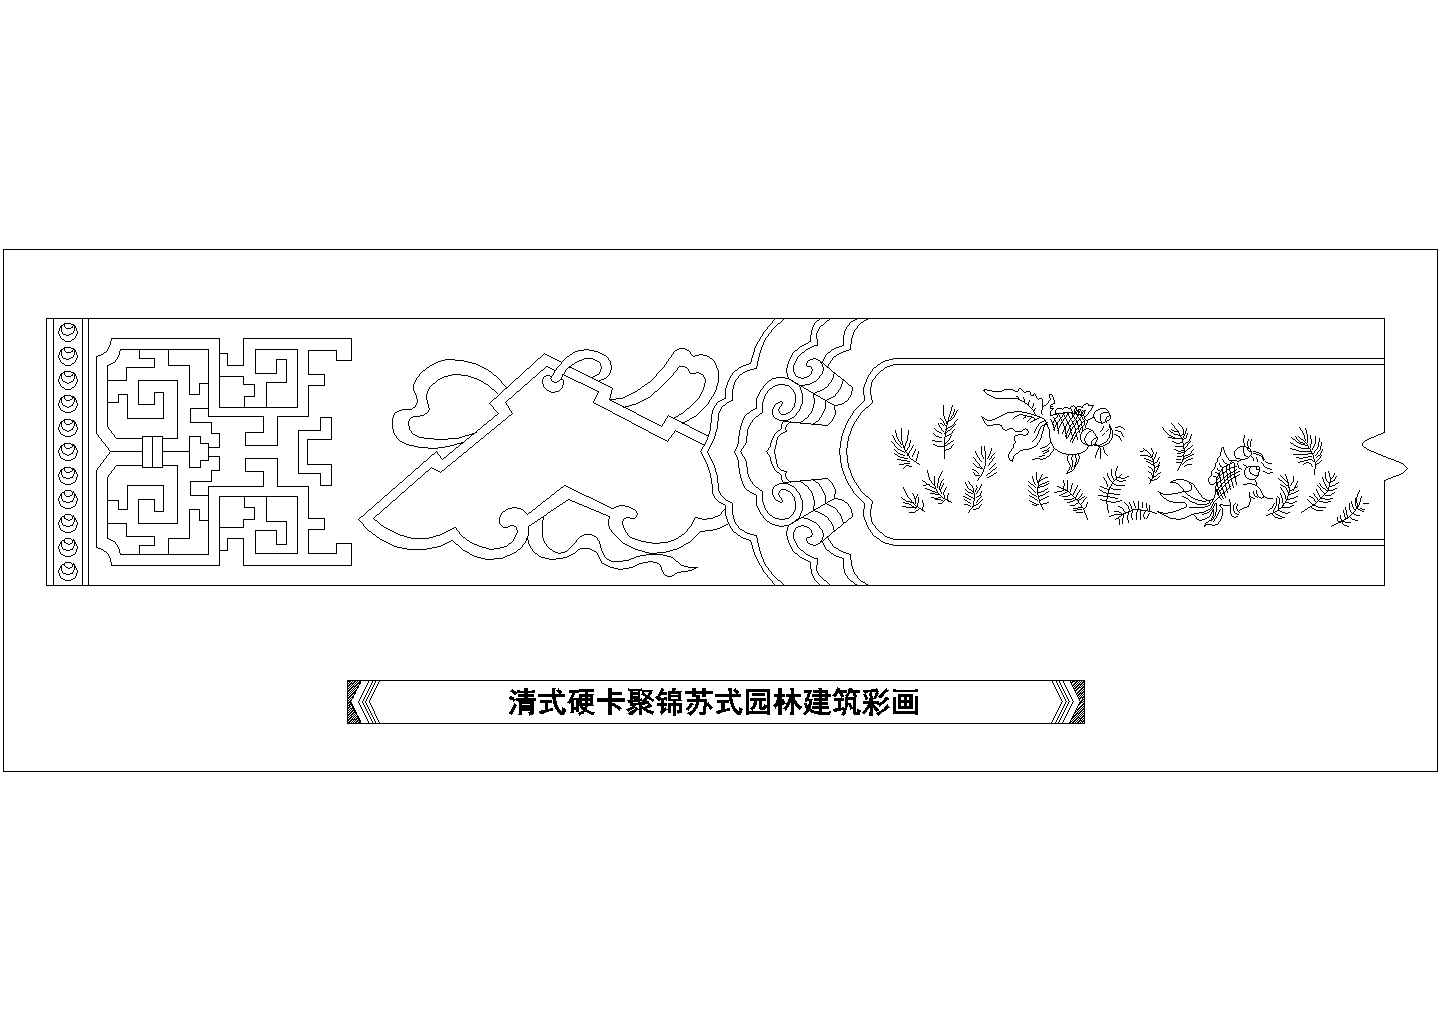 某清式硬卡聚锦苏式园林建筑彩画CAD设计图